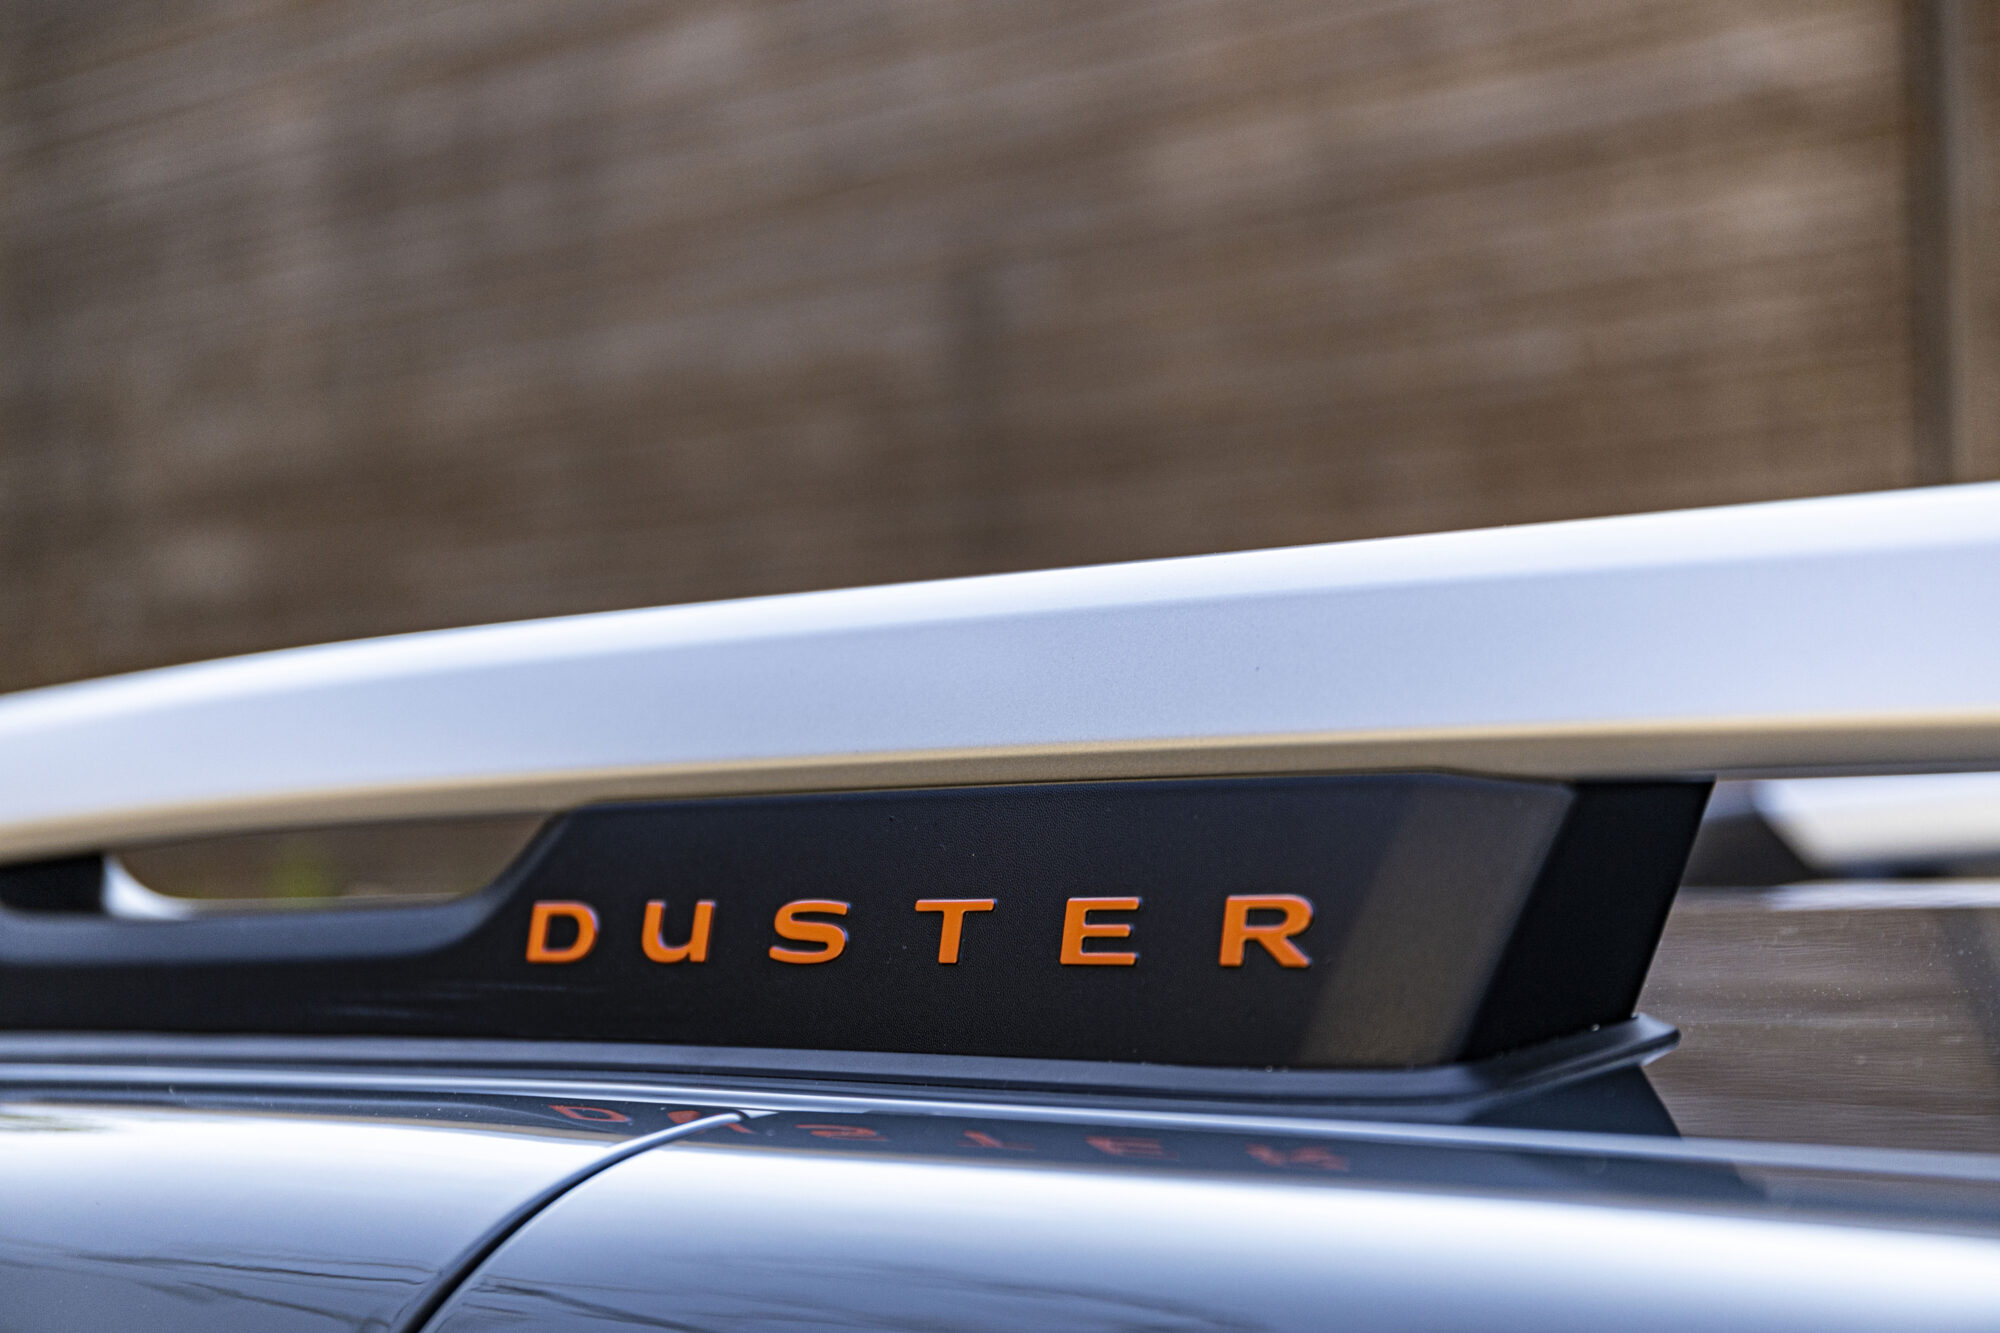 2021 - Nouveau Dacia Duster Série Limitée Extreme